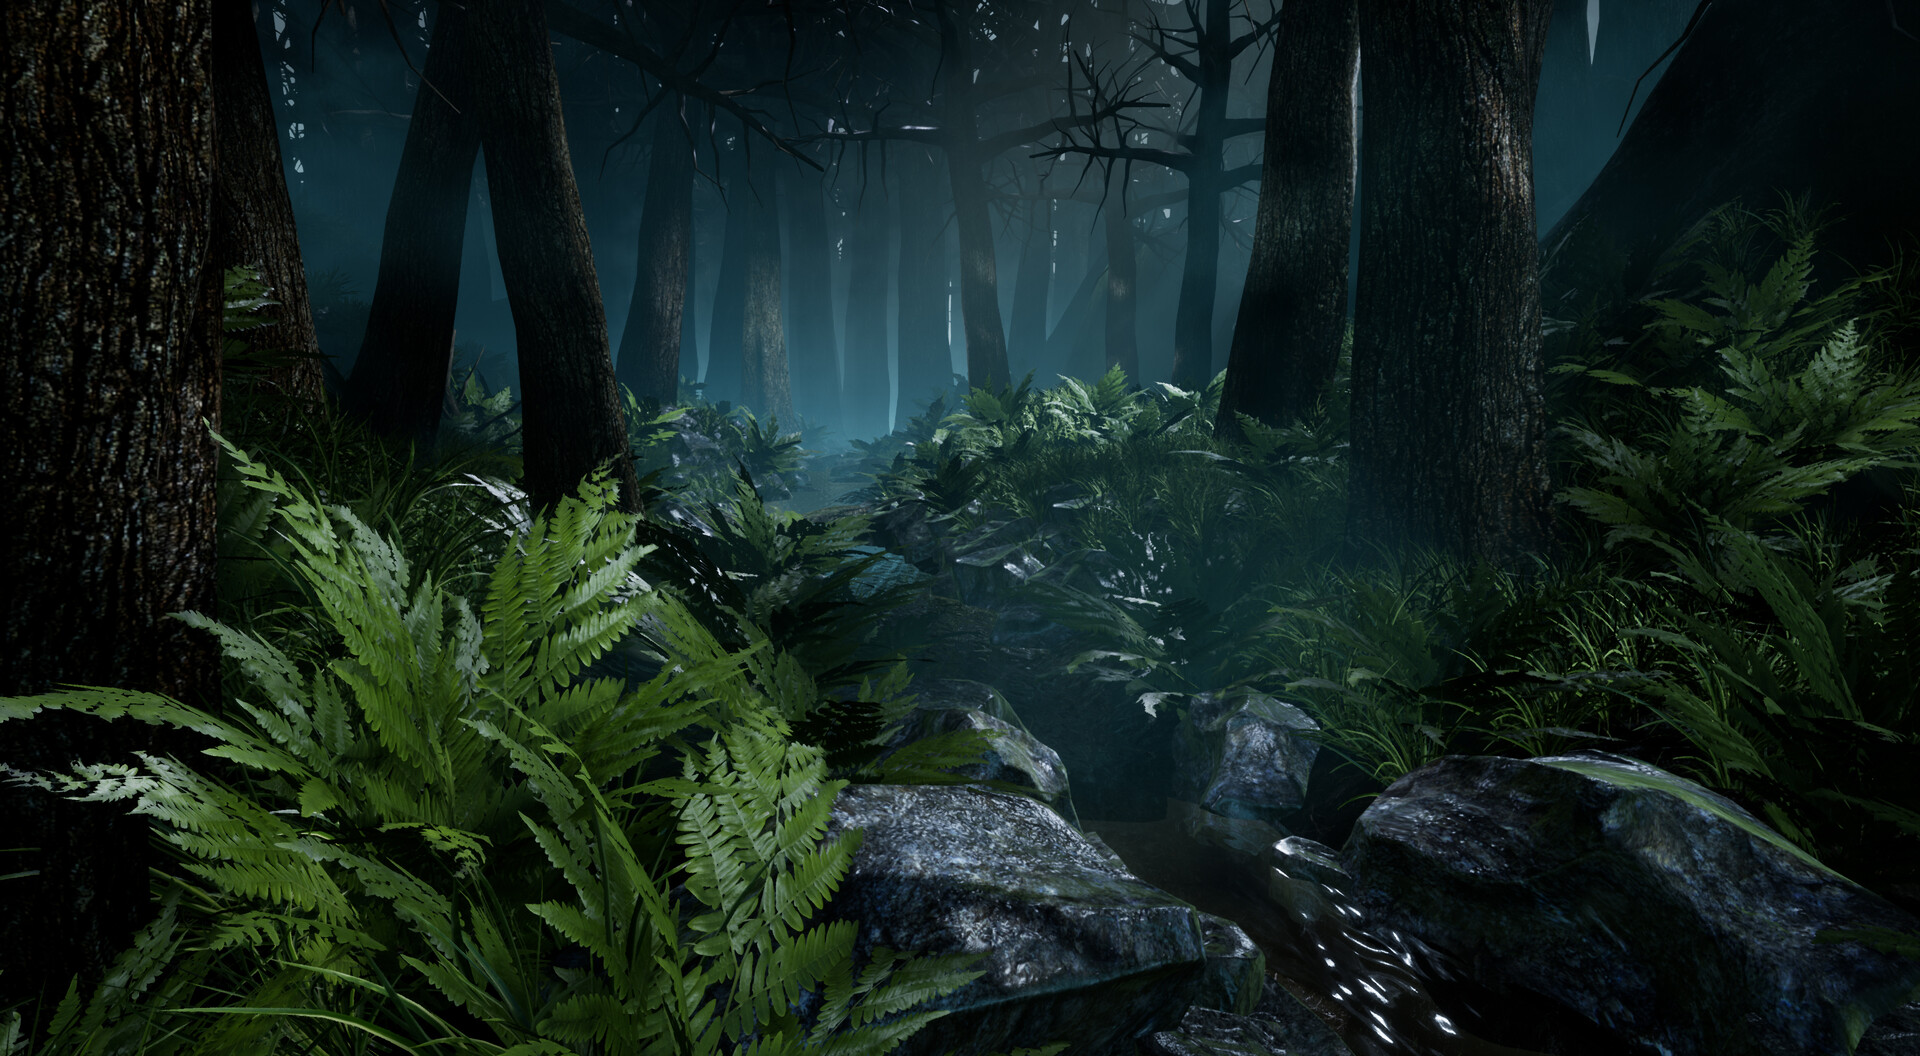 Dark Forest: Khi khám phá những bức ảnh về rừng tối của chúng tôi, bạn sẽ được đắm mình trong không gian bí ẩn và ma mị của rừng. Bức ảnh sẽ khiến bạn cảm thấy mình đang thám hiểm trong những cung đường rừng rậm hoang sơ, với những ánh sáng lung linh vừa đủ để đốn tim của bạn.